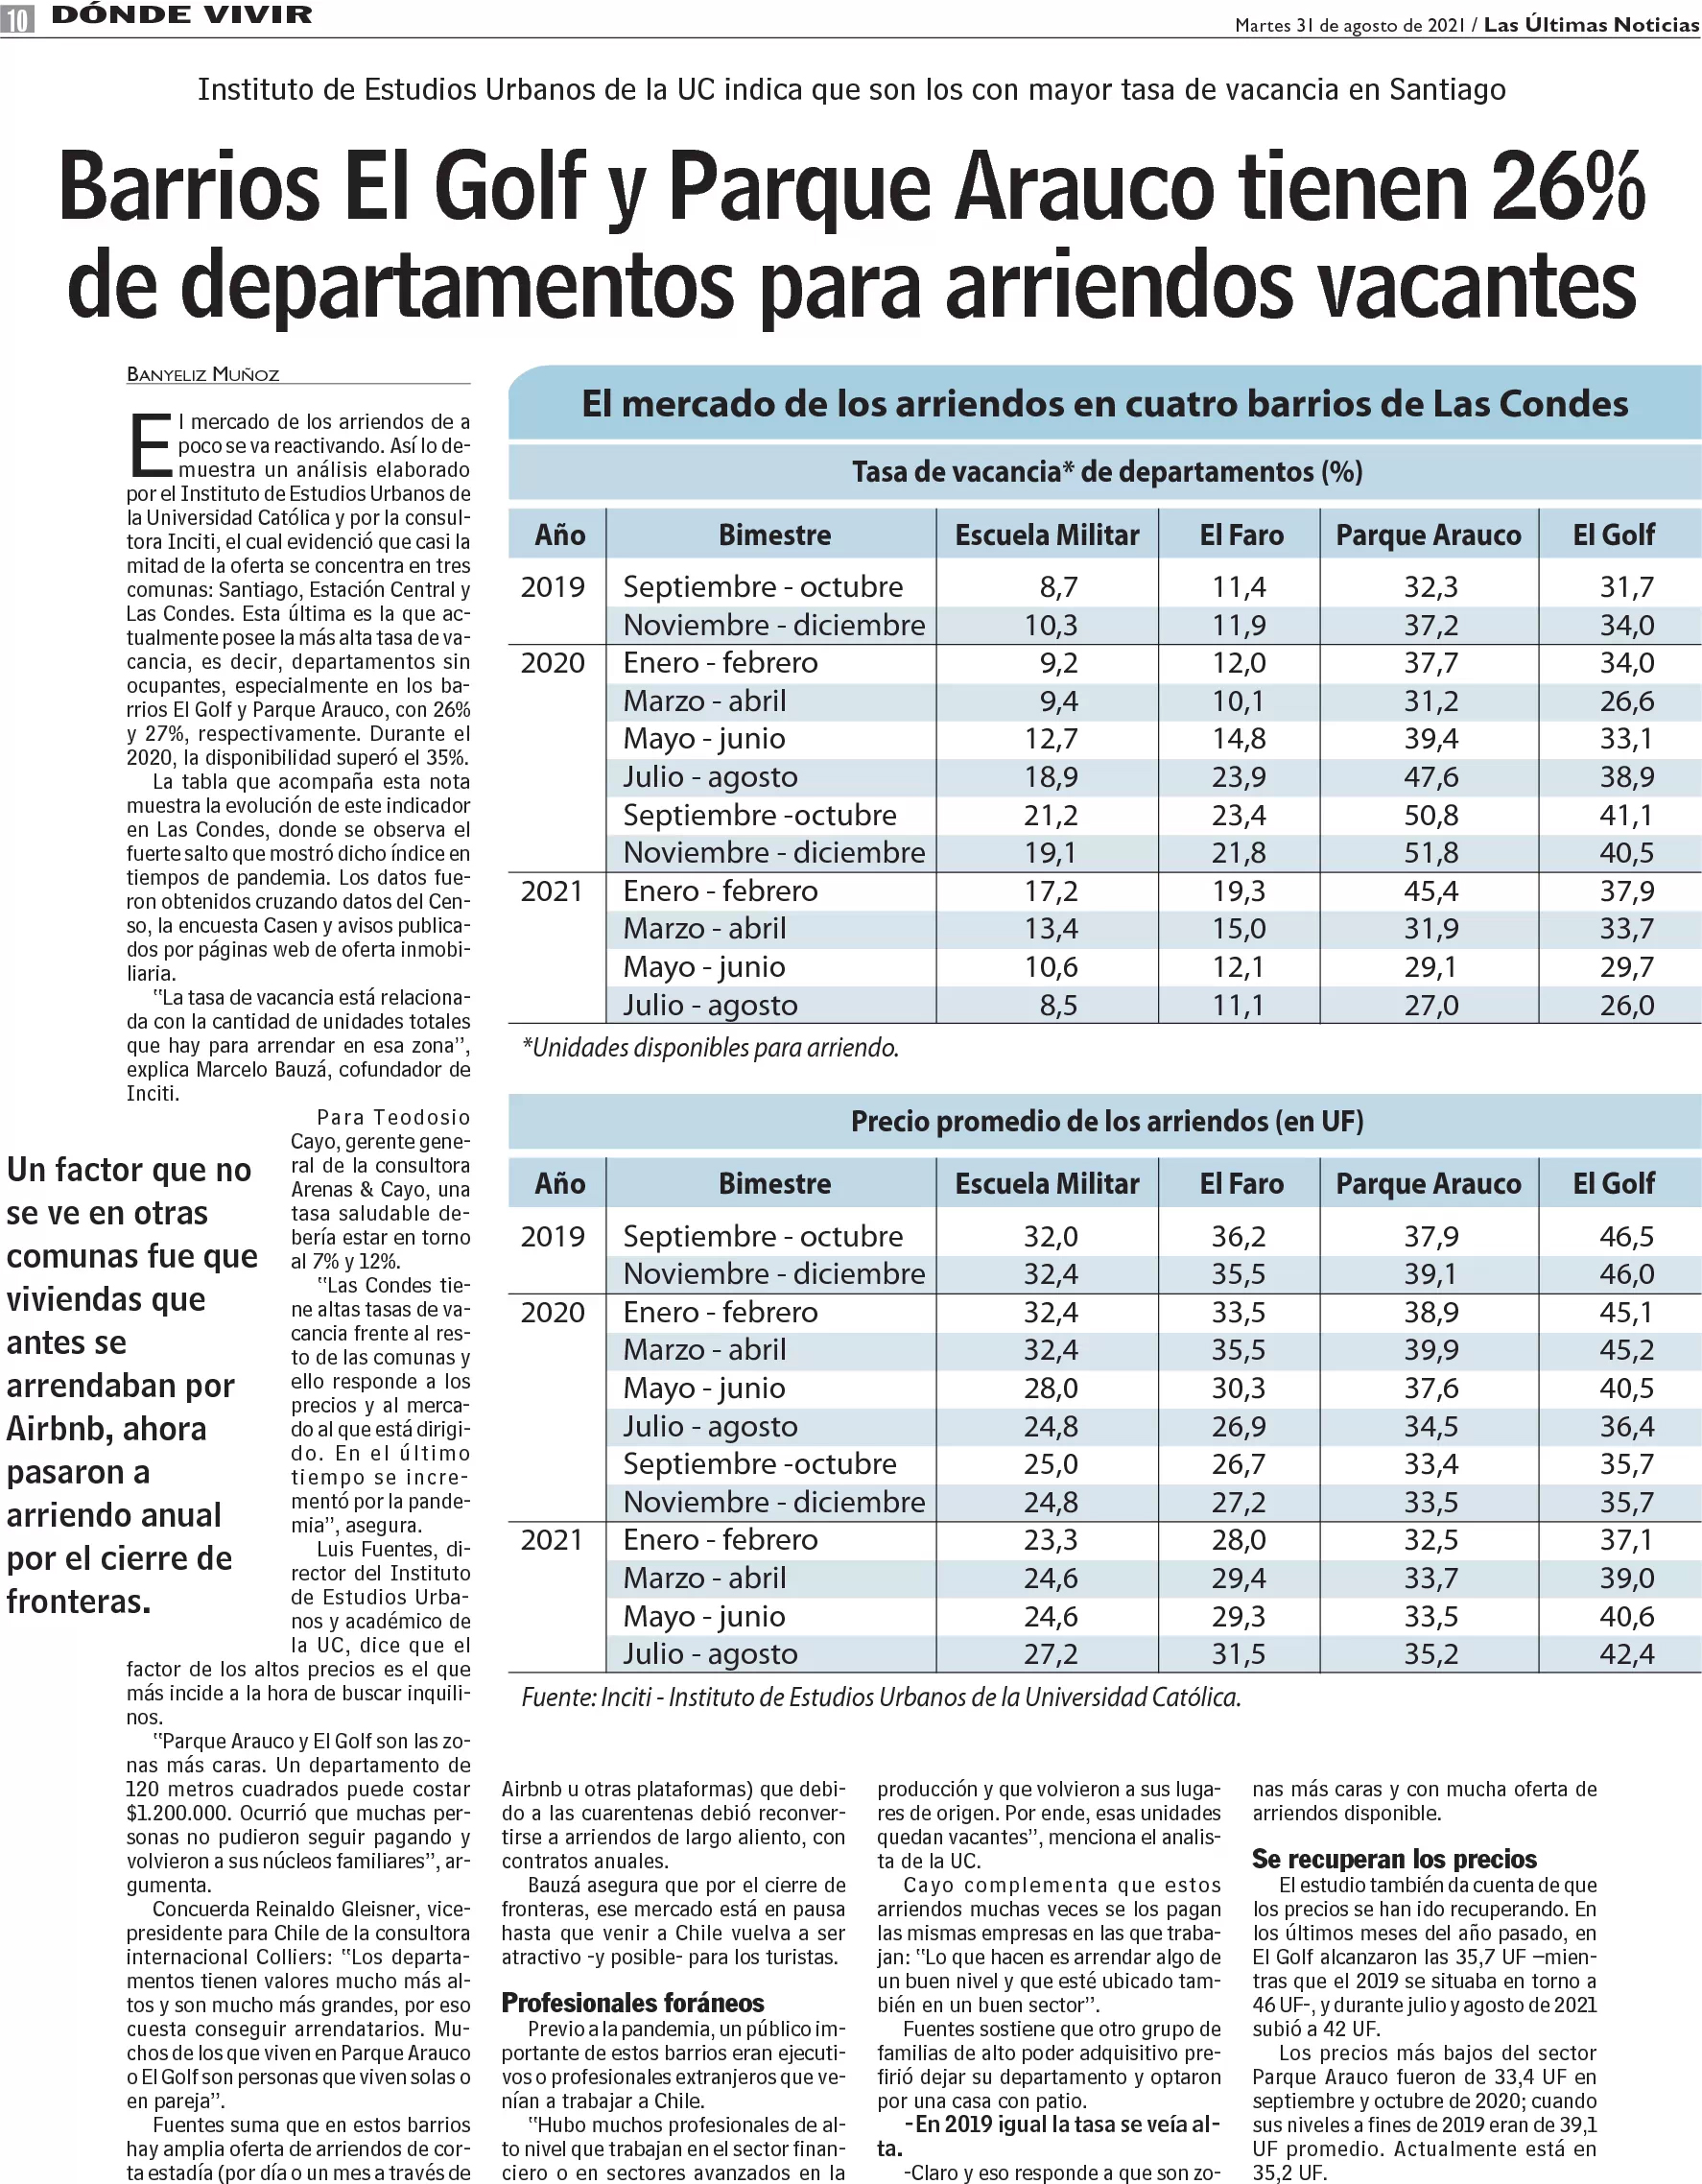 LUN | Barrios El golf y Parque Arauco tienen 26% de departamentos para arriendos vacantes.